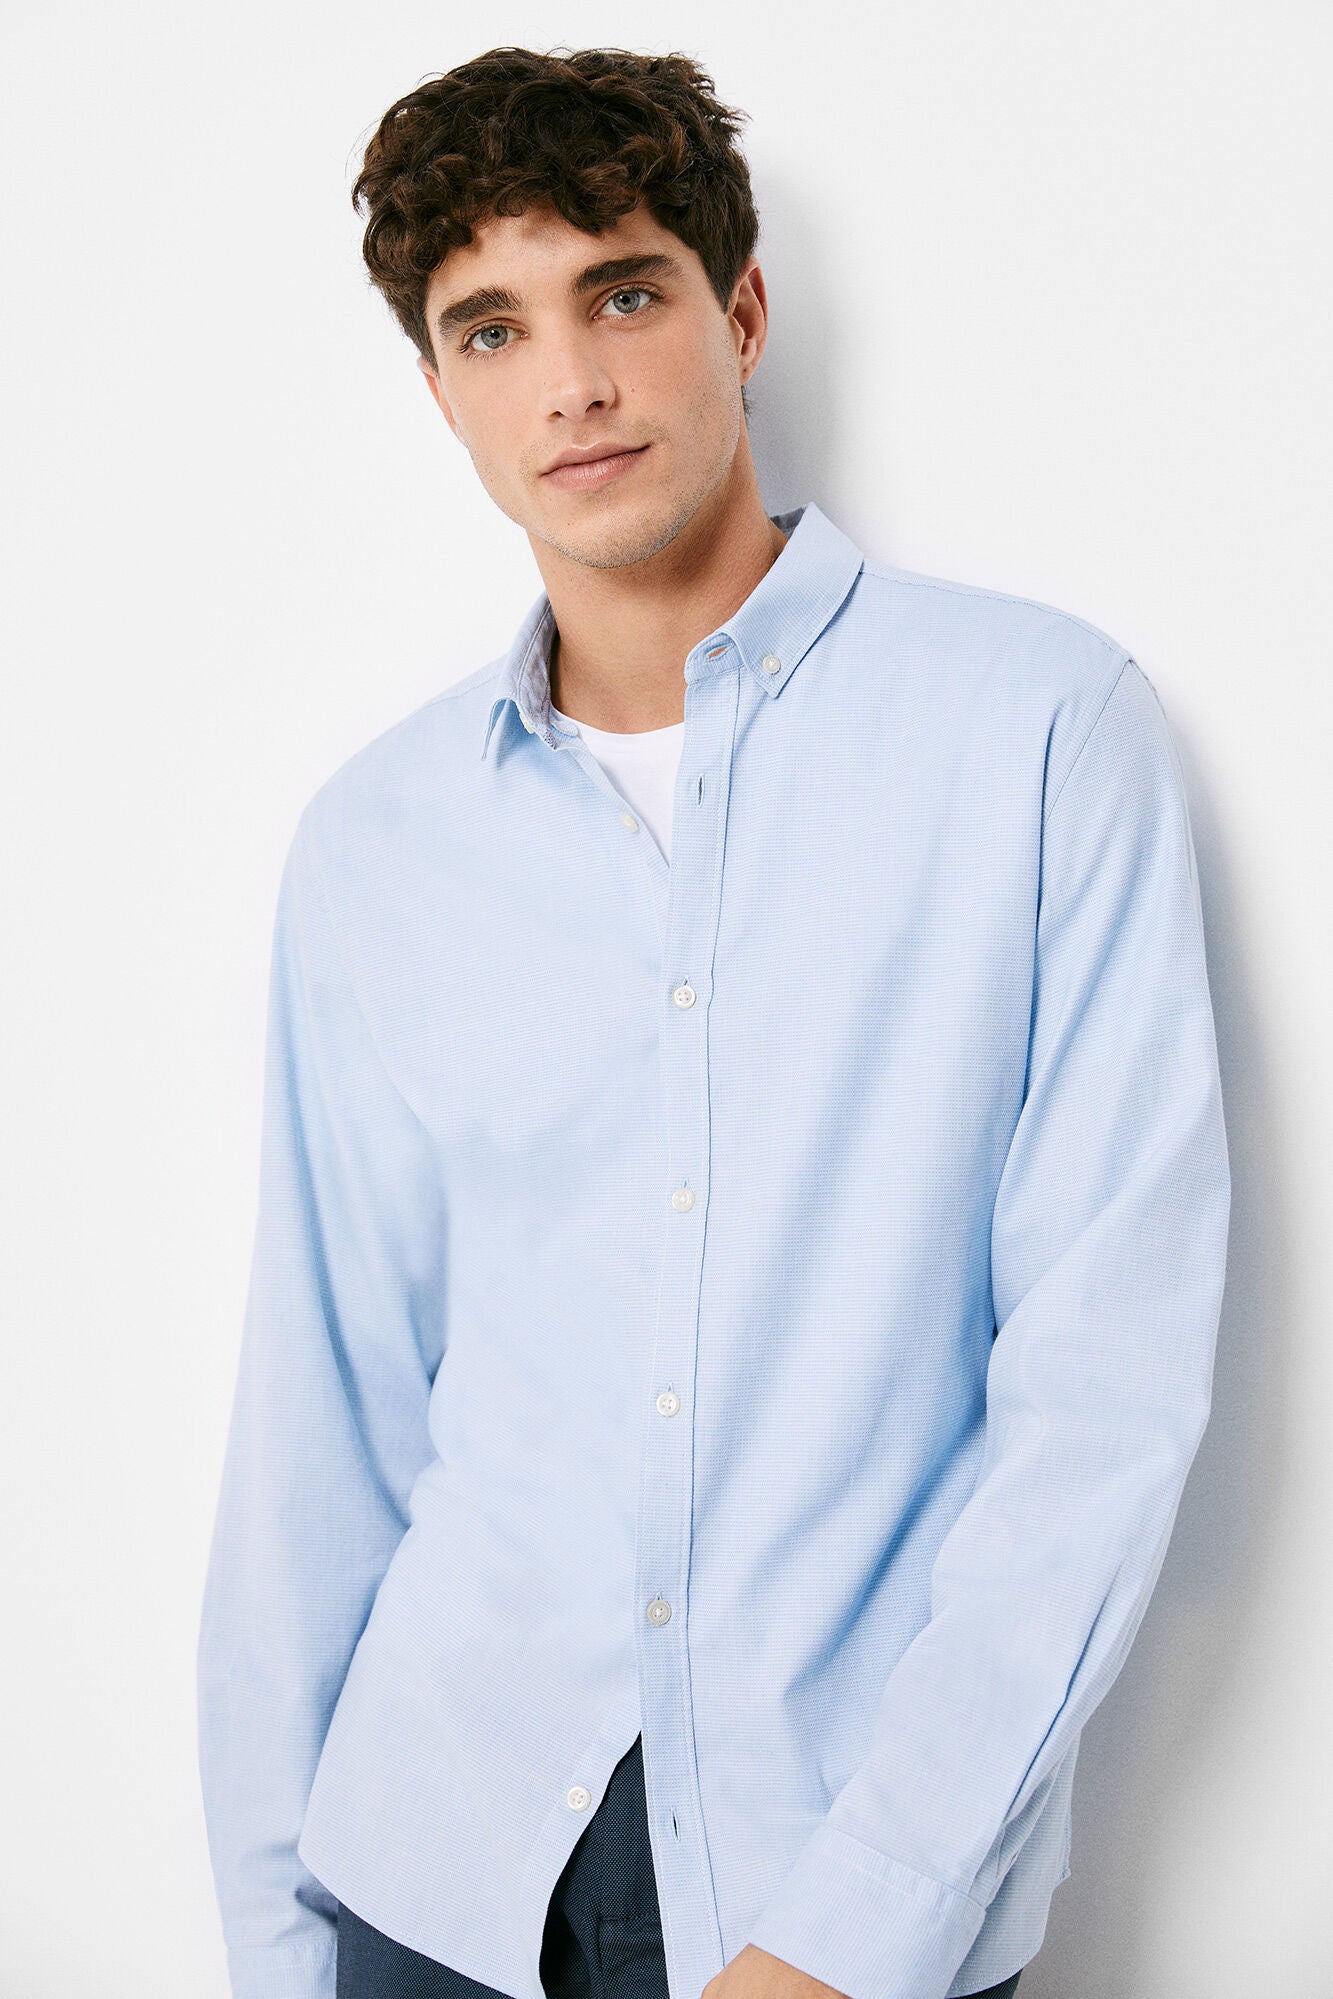 Textured colour shirt (Custom Fit) - Light Blue